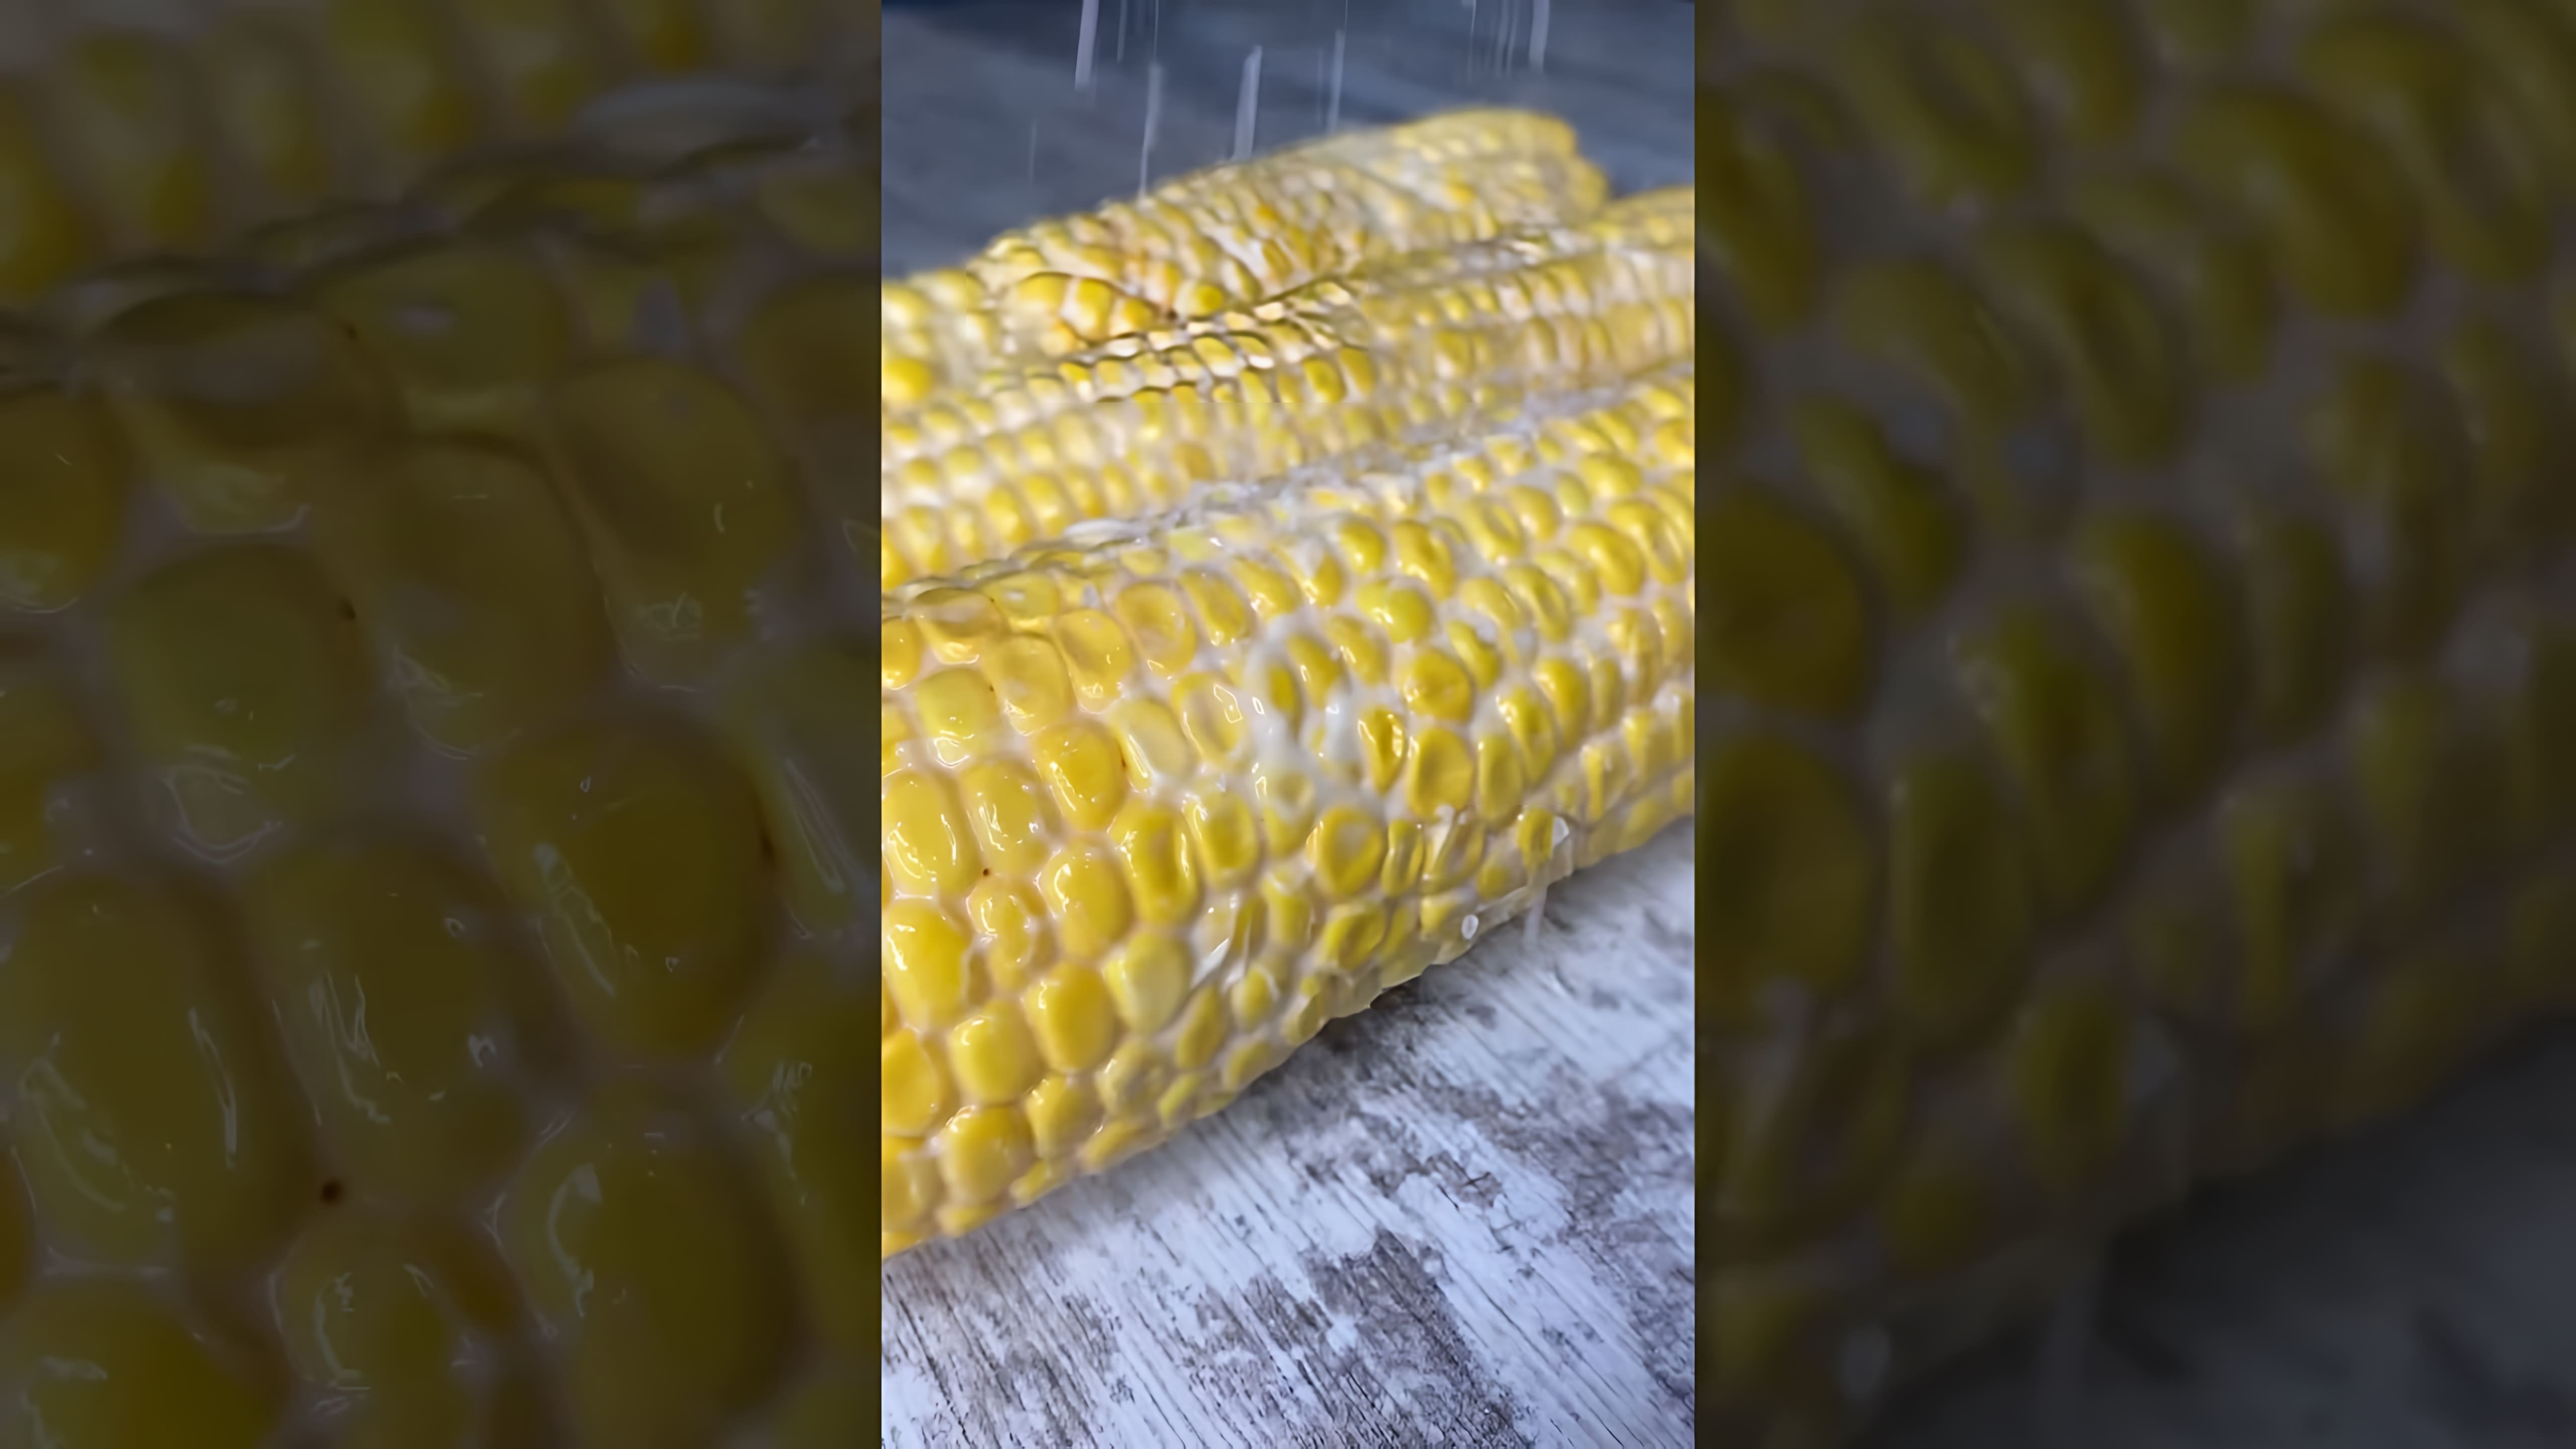 "Не Вари кукурузу! Сделай так! #Рецепт #Еда #кукуруза" - это видео-ролик, который предлагает оригинальный способ приготовления кукурузы